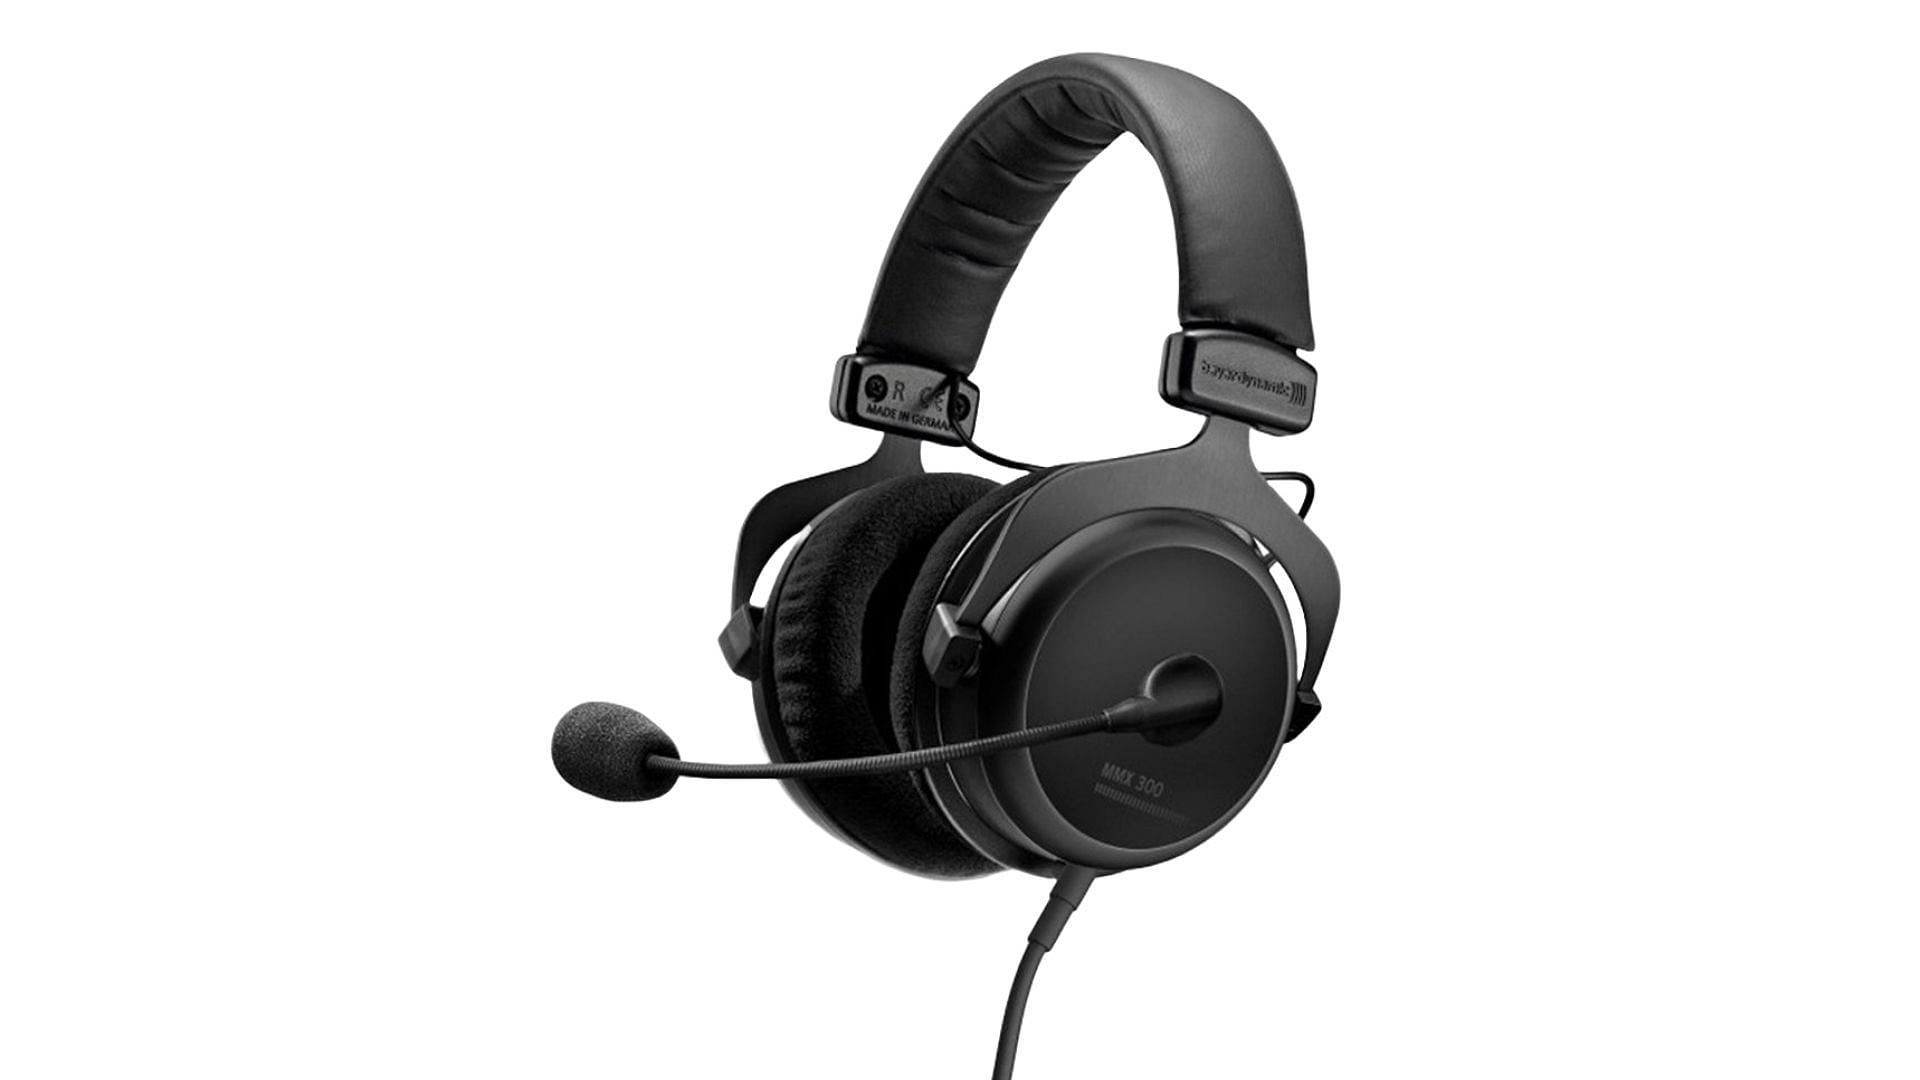 Beyerdynamic MMX 300 - best over-ear gaming headphones (Image via Beyerdynamic)